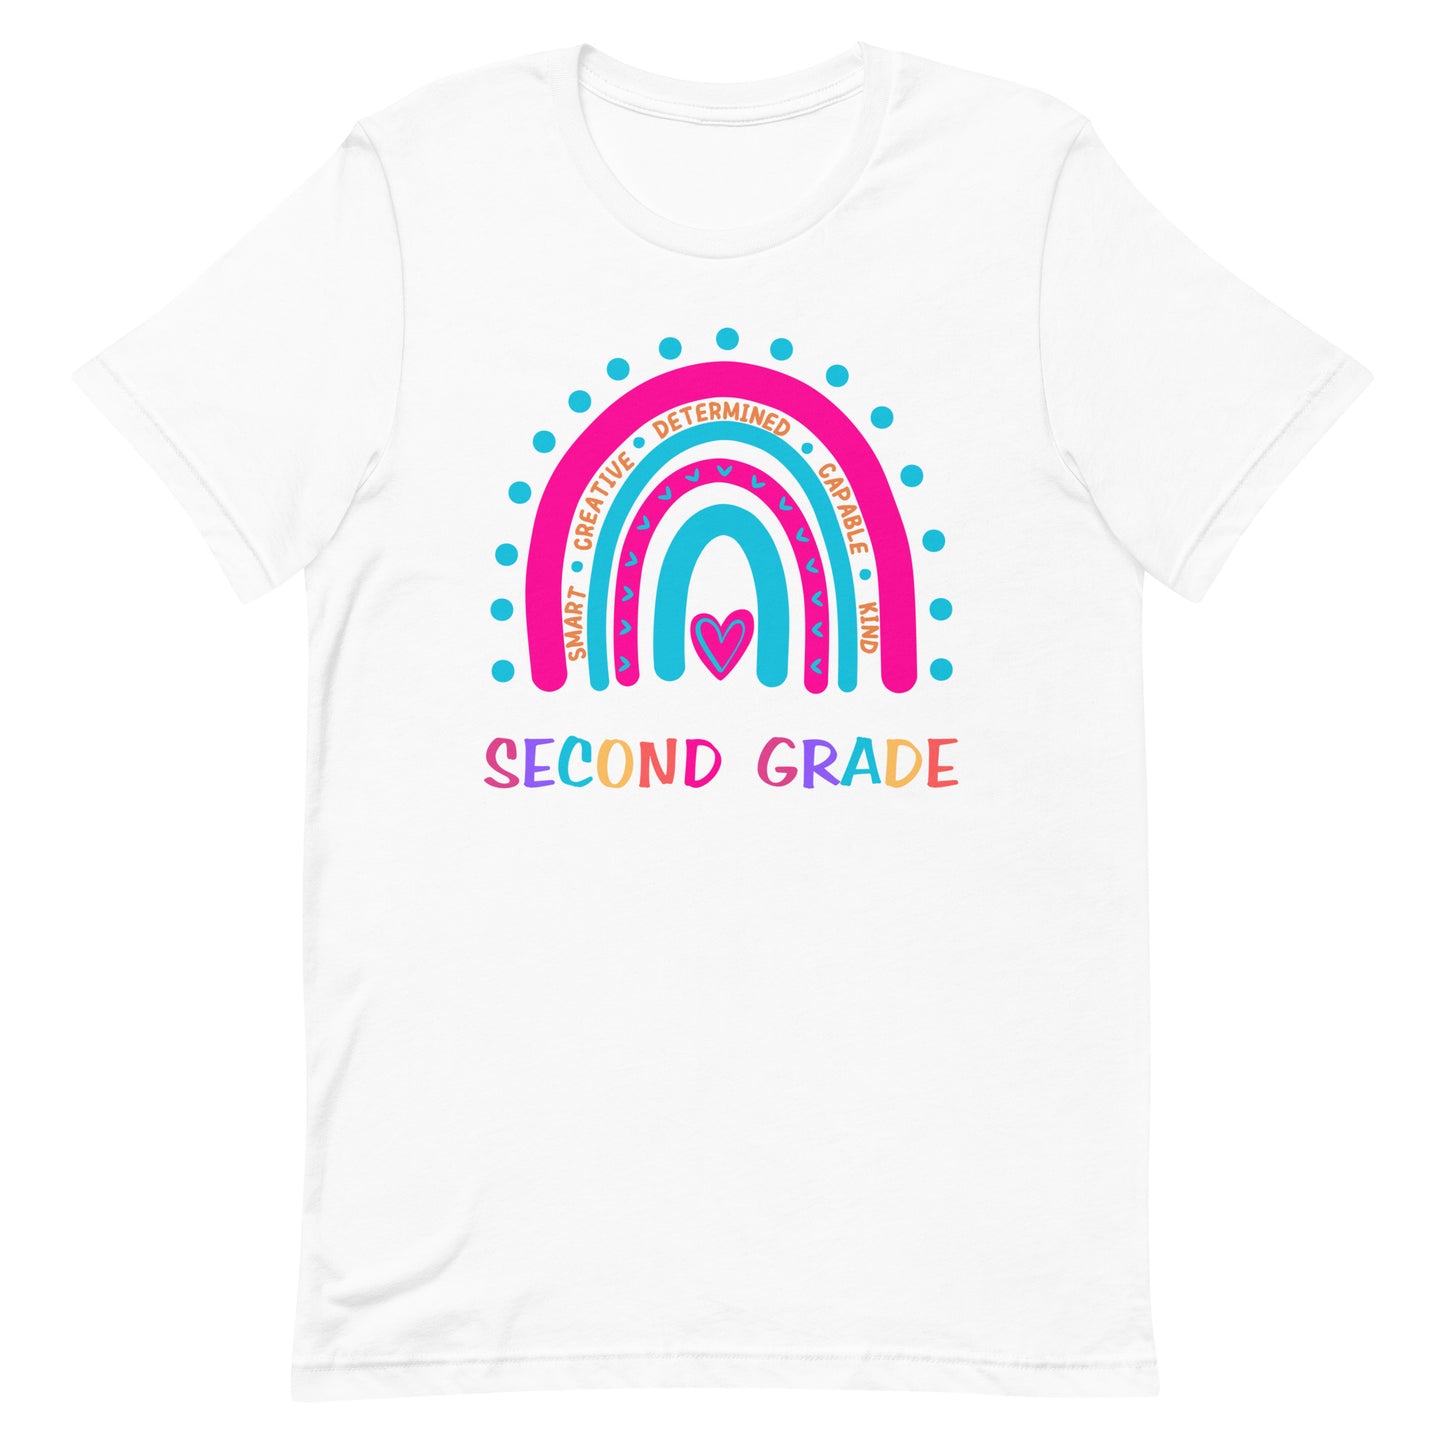 Second Grade Affirmation T-shirt